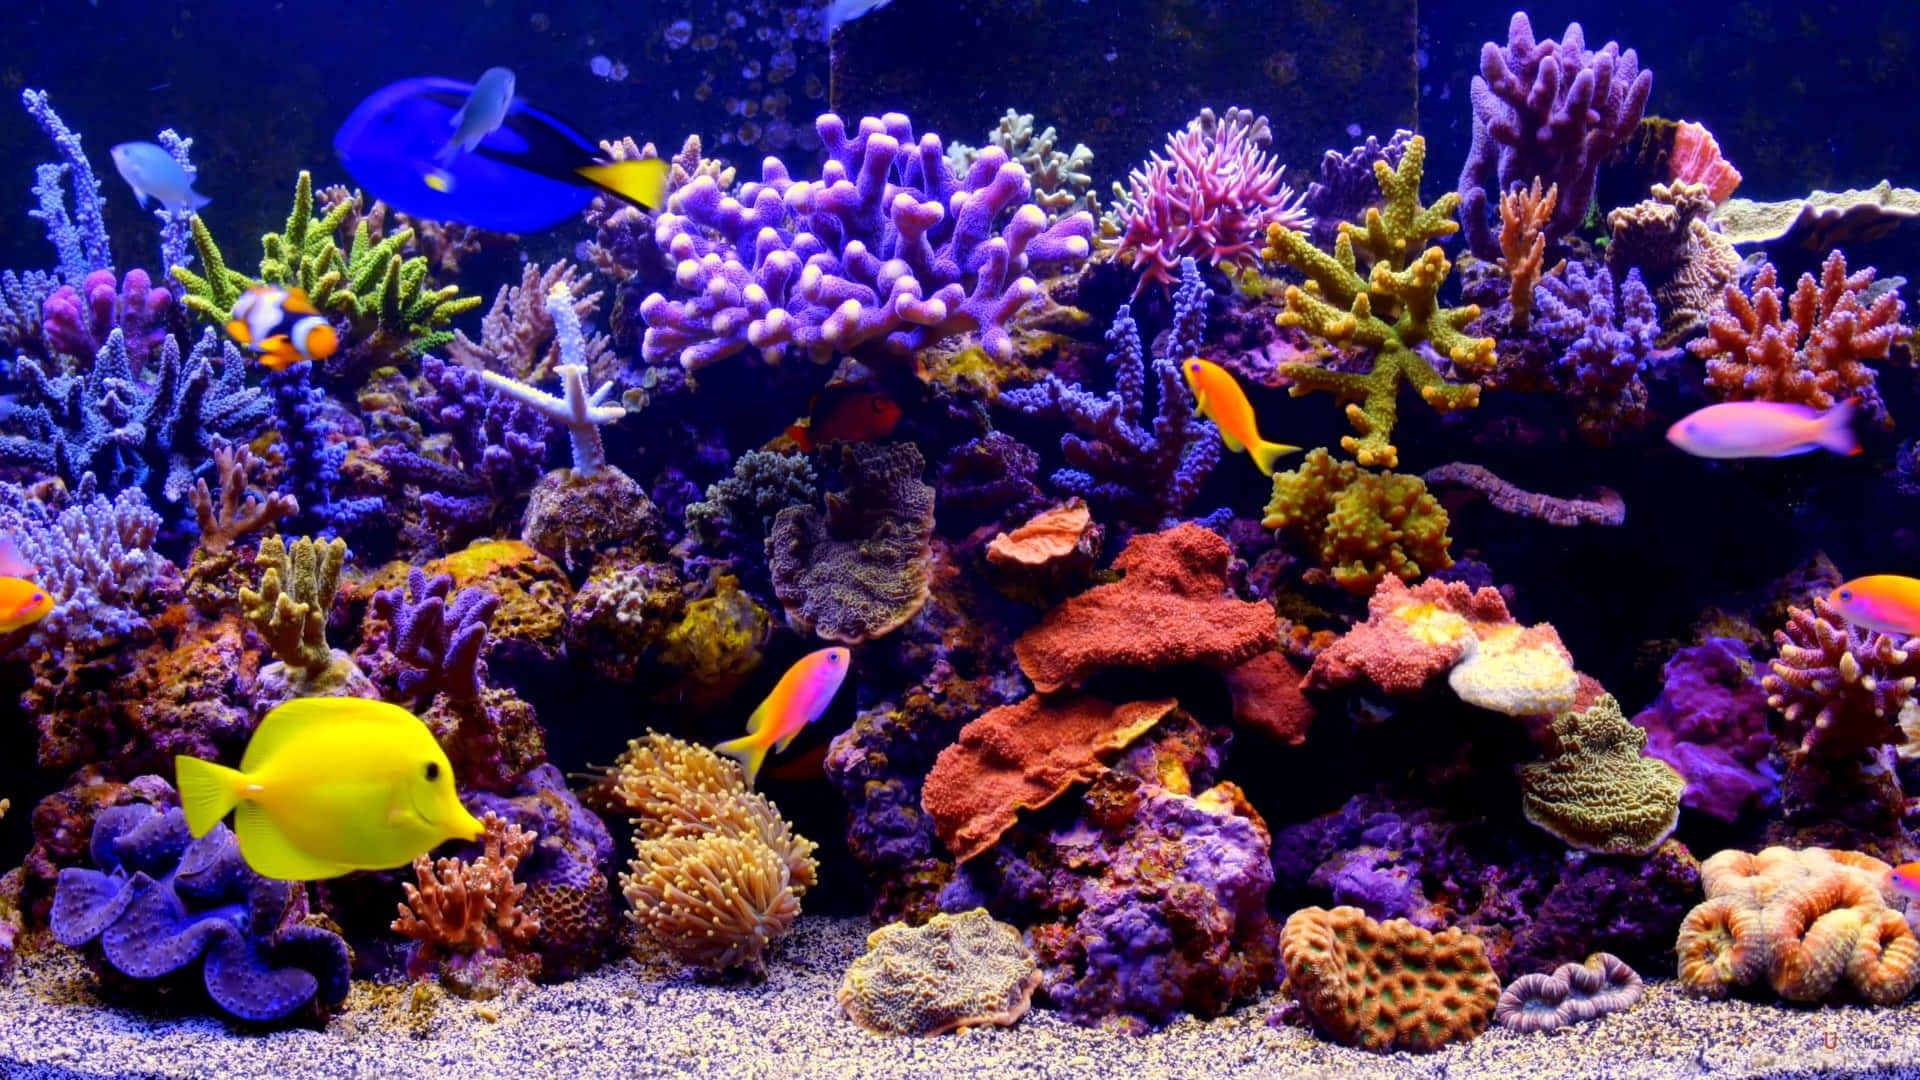 Glistening Fish Explore a Colored Aquarium